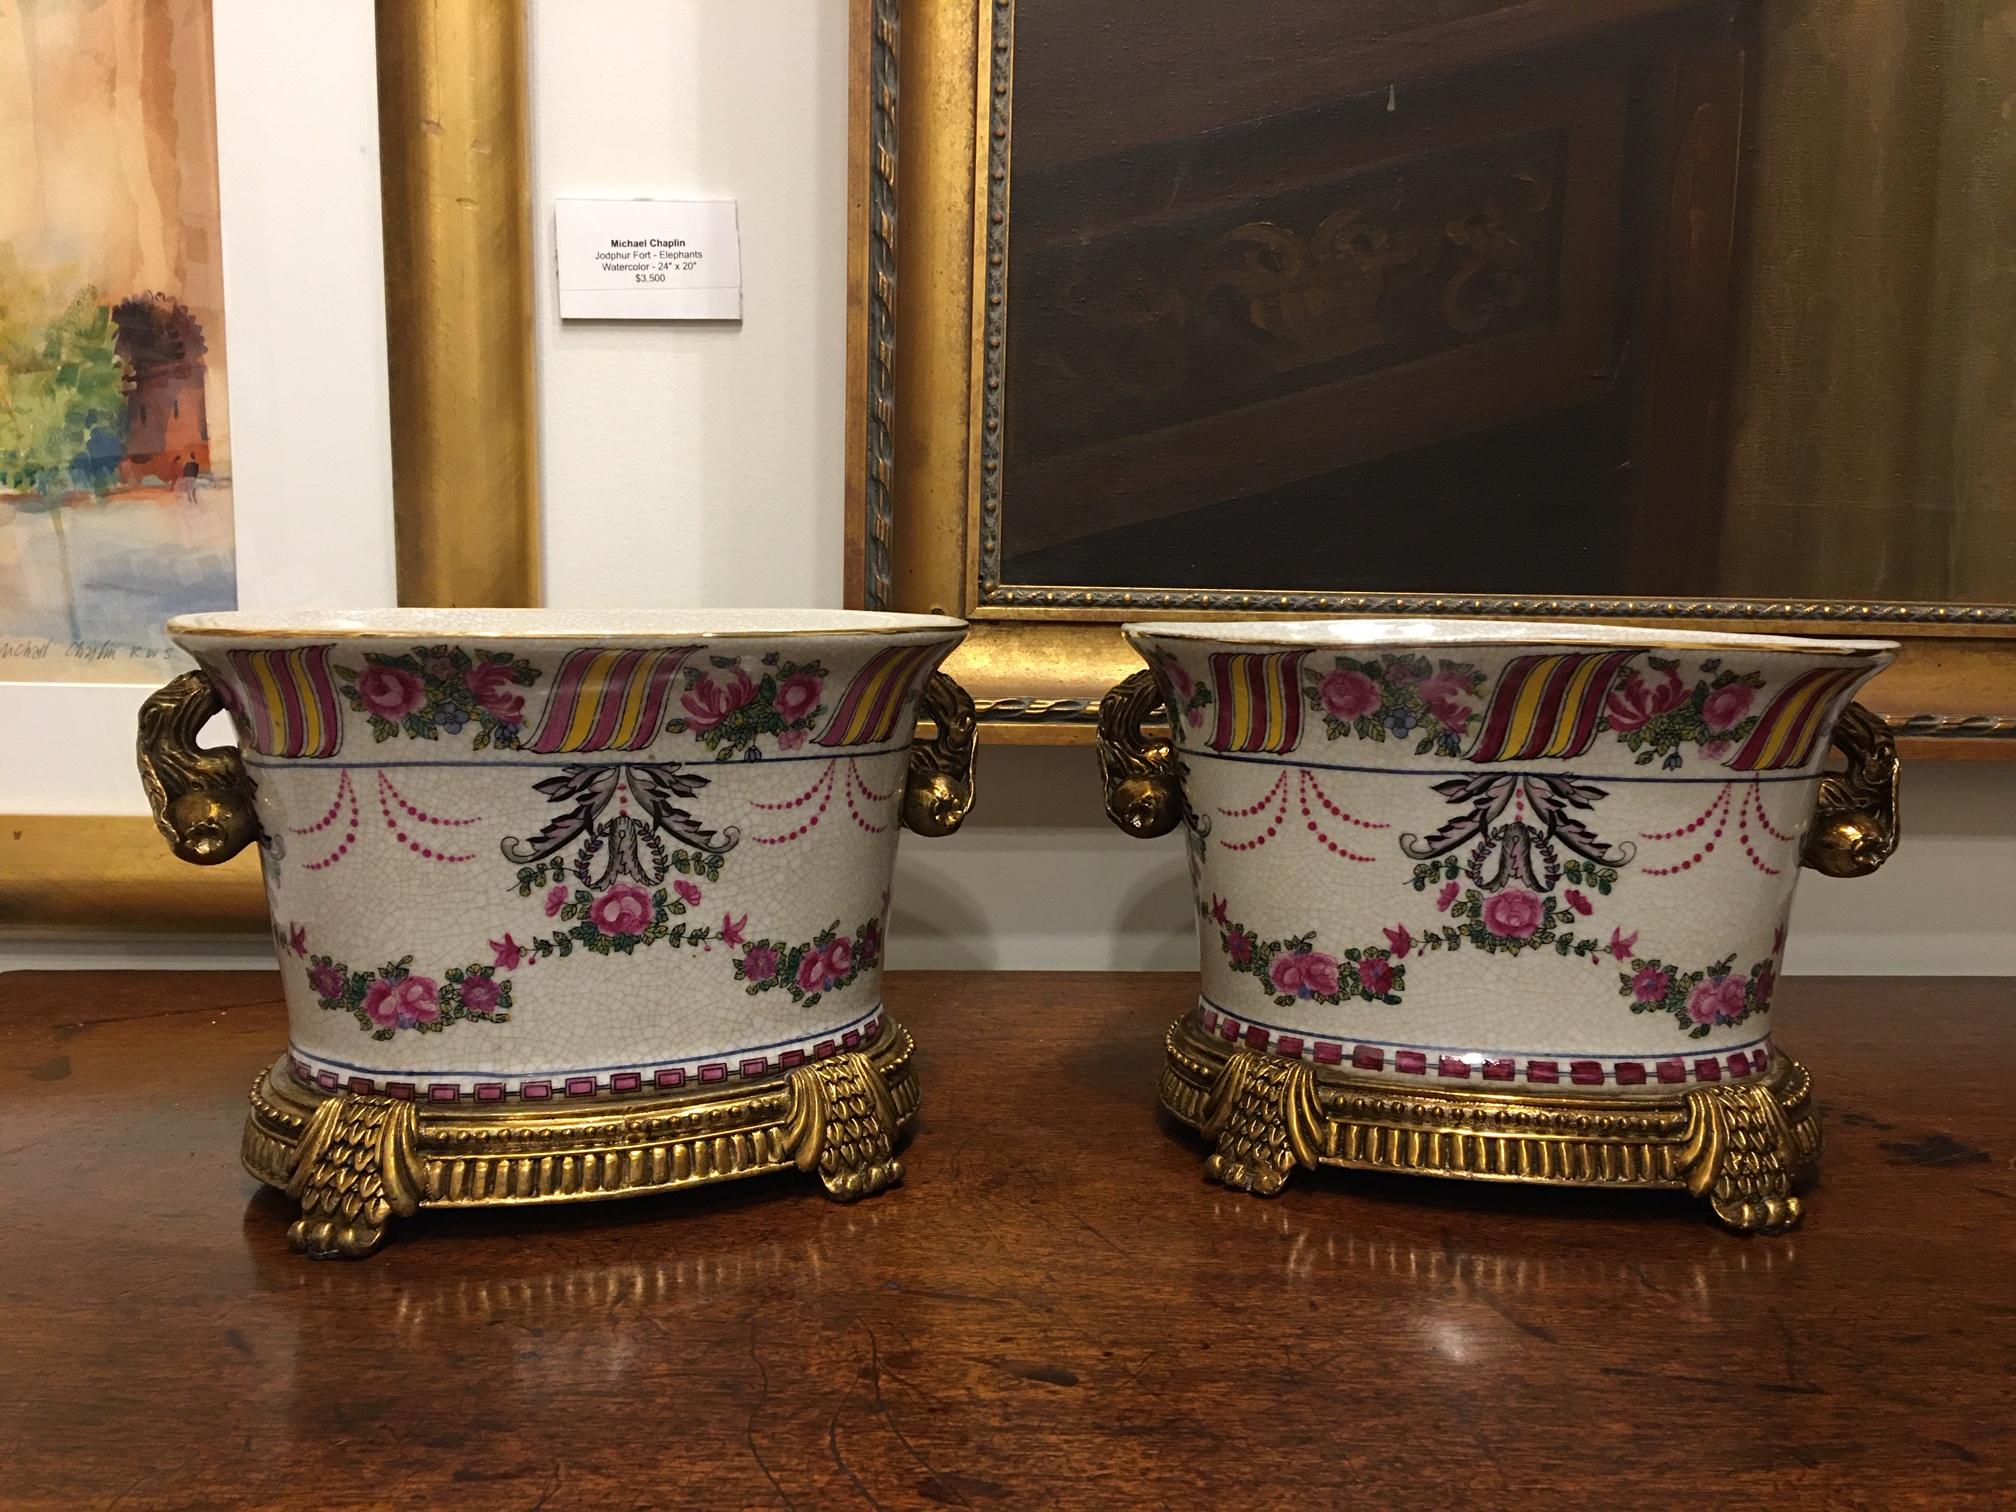 Pair of porcelain cache pots or jardinières with a floral motif, 20th century.